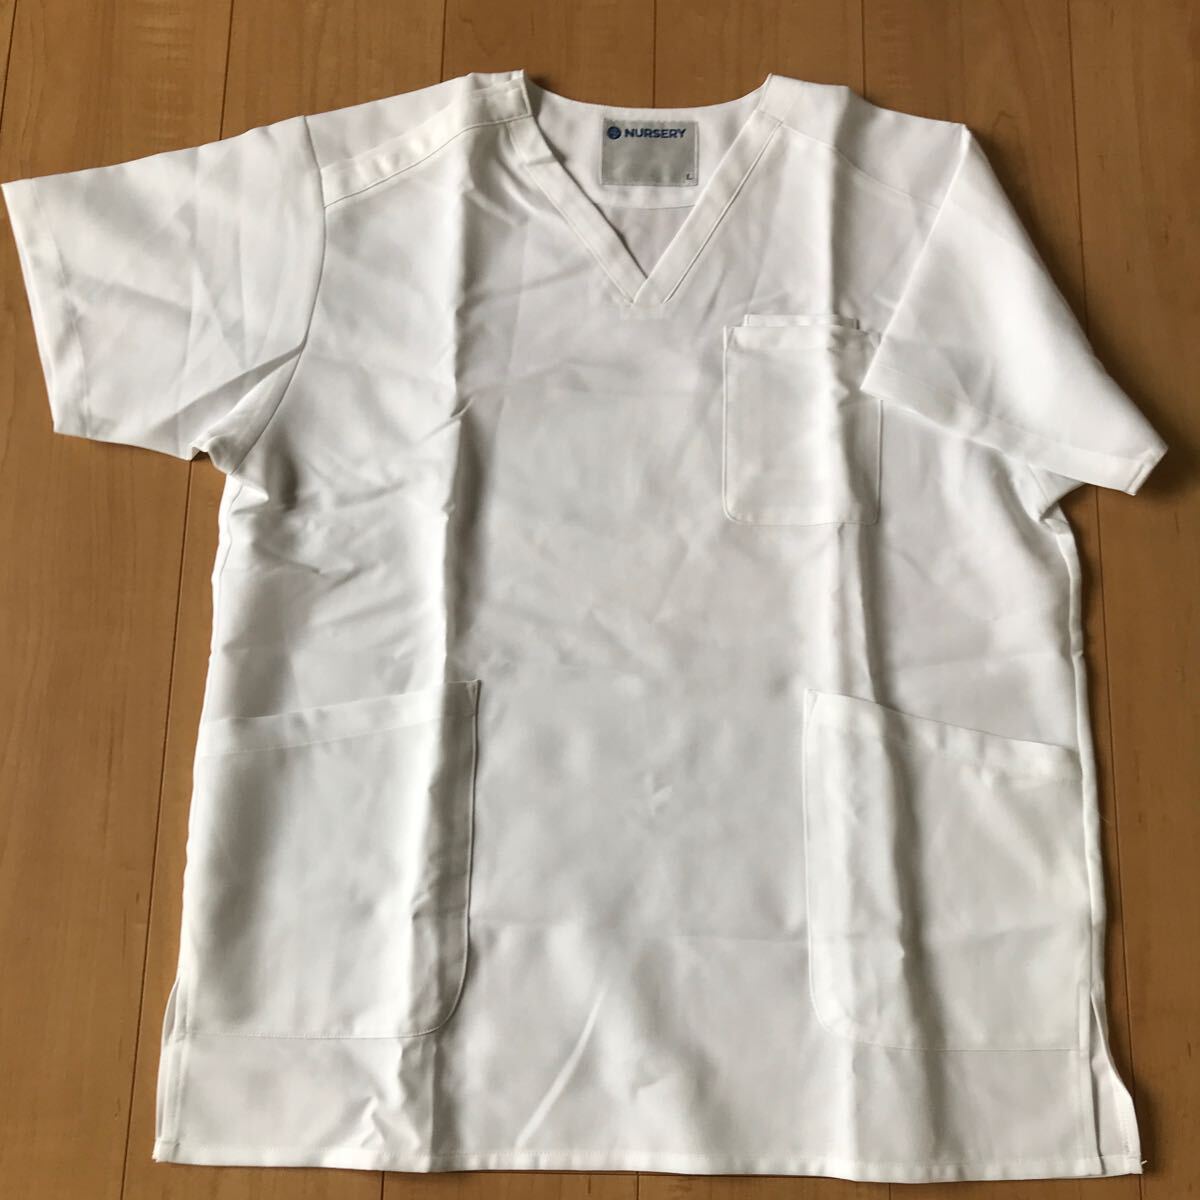  white garment nurse L size 